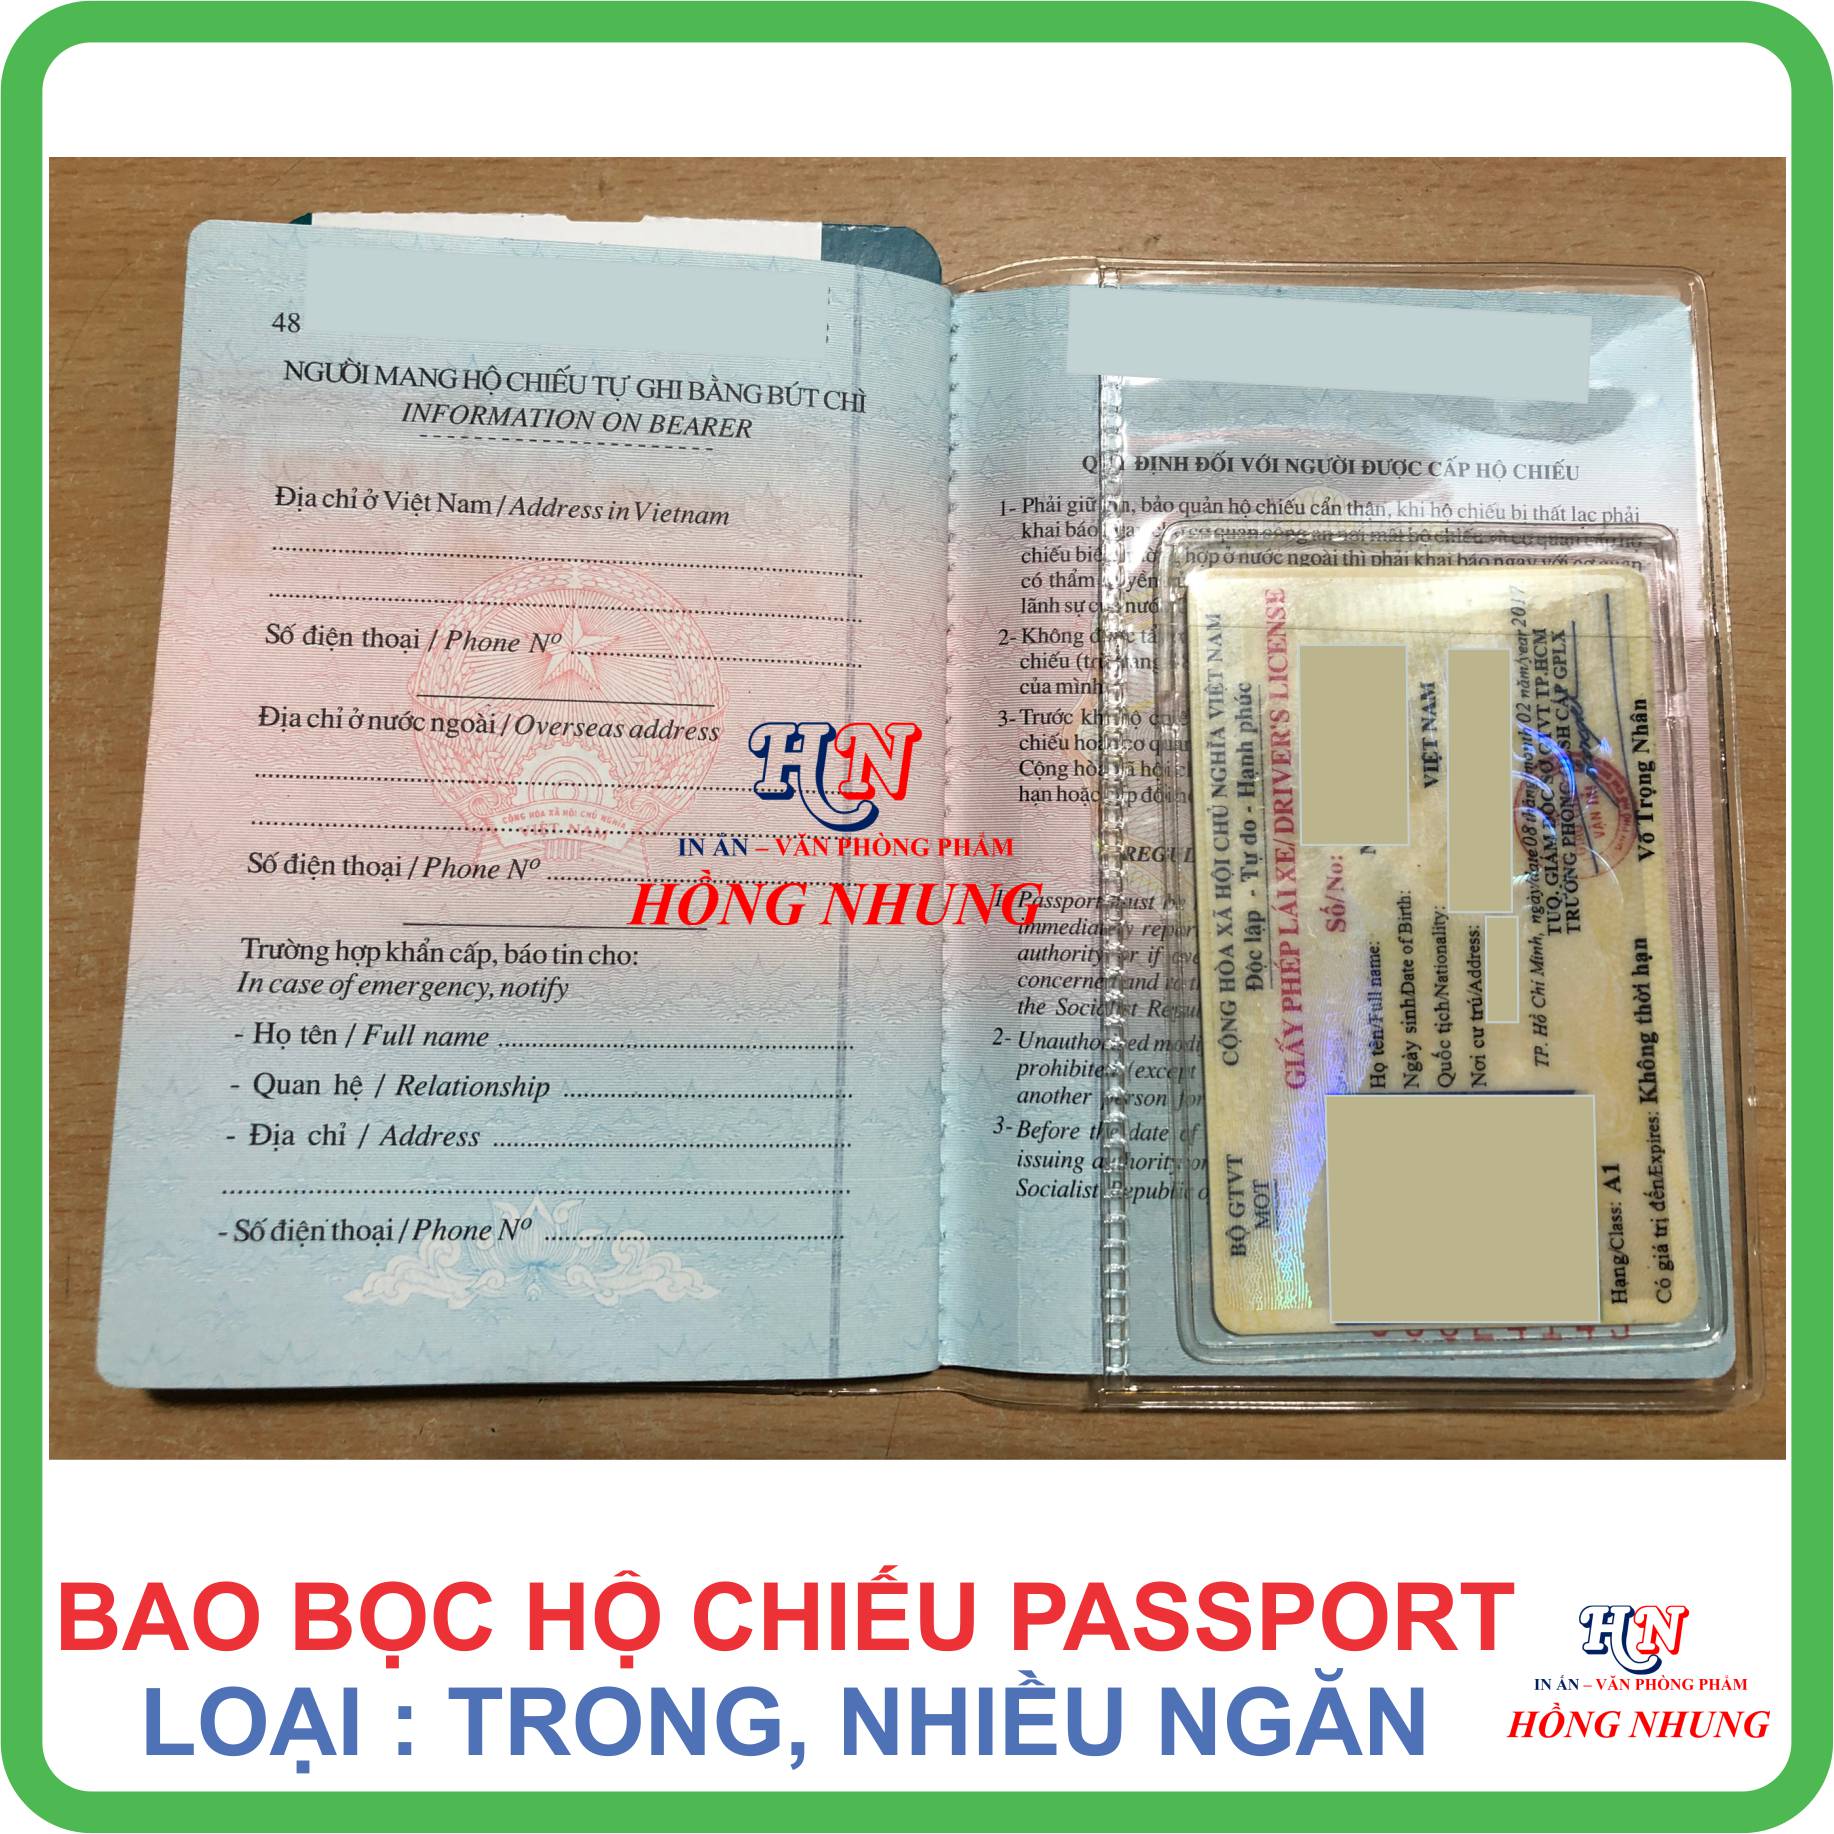 Bao Bọc Hộ Chiếu Passport PVC nhiếu ngăn, Trong Suốt (Chất Liệu Nhựa Dẻo Chống Thấm nước)